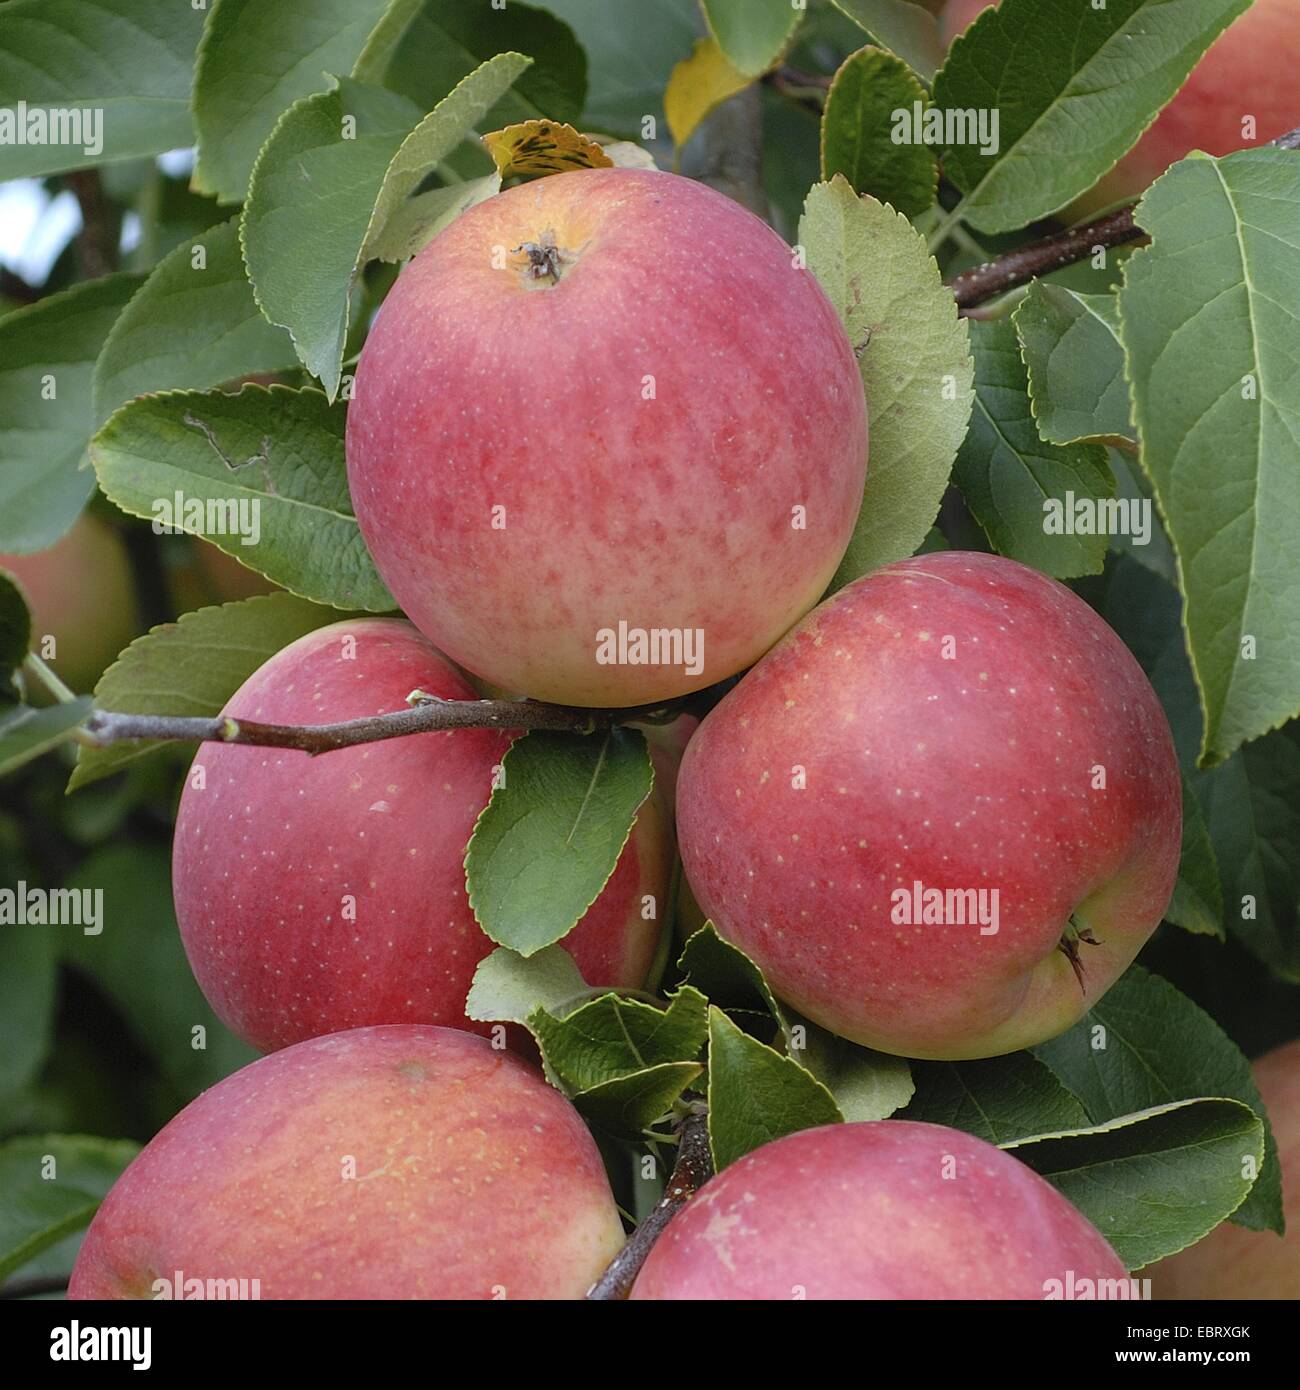 apple tree (Malus domestica 'Rebella', Malus domestica Rebella), cultivar Rebella, apples on a tree Stock Photo